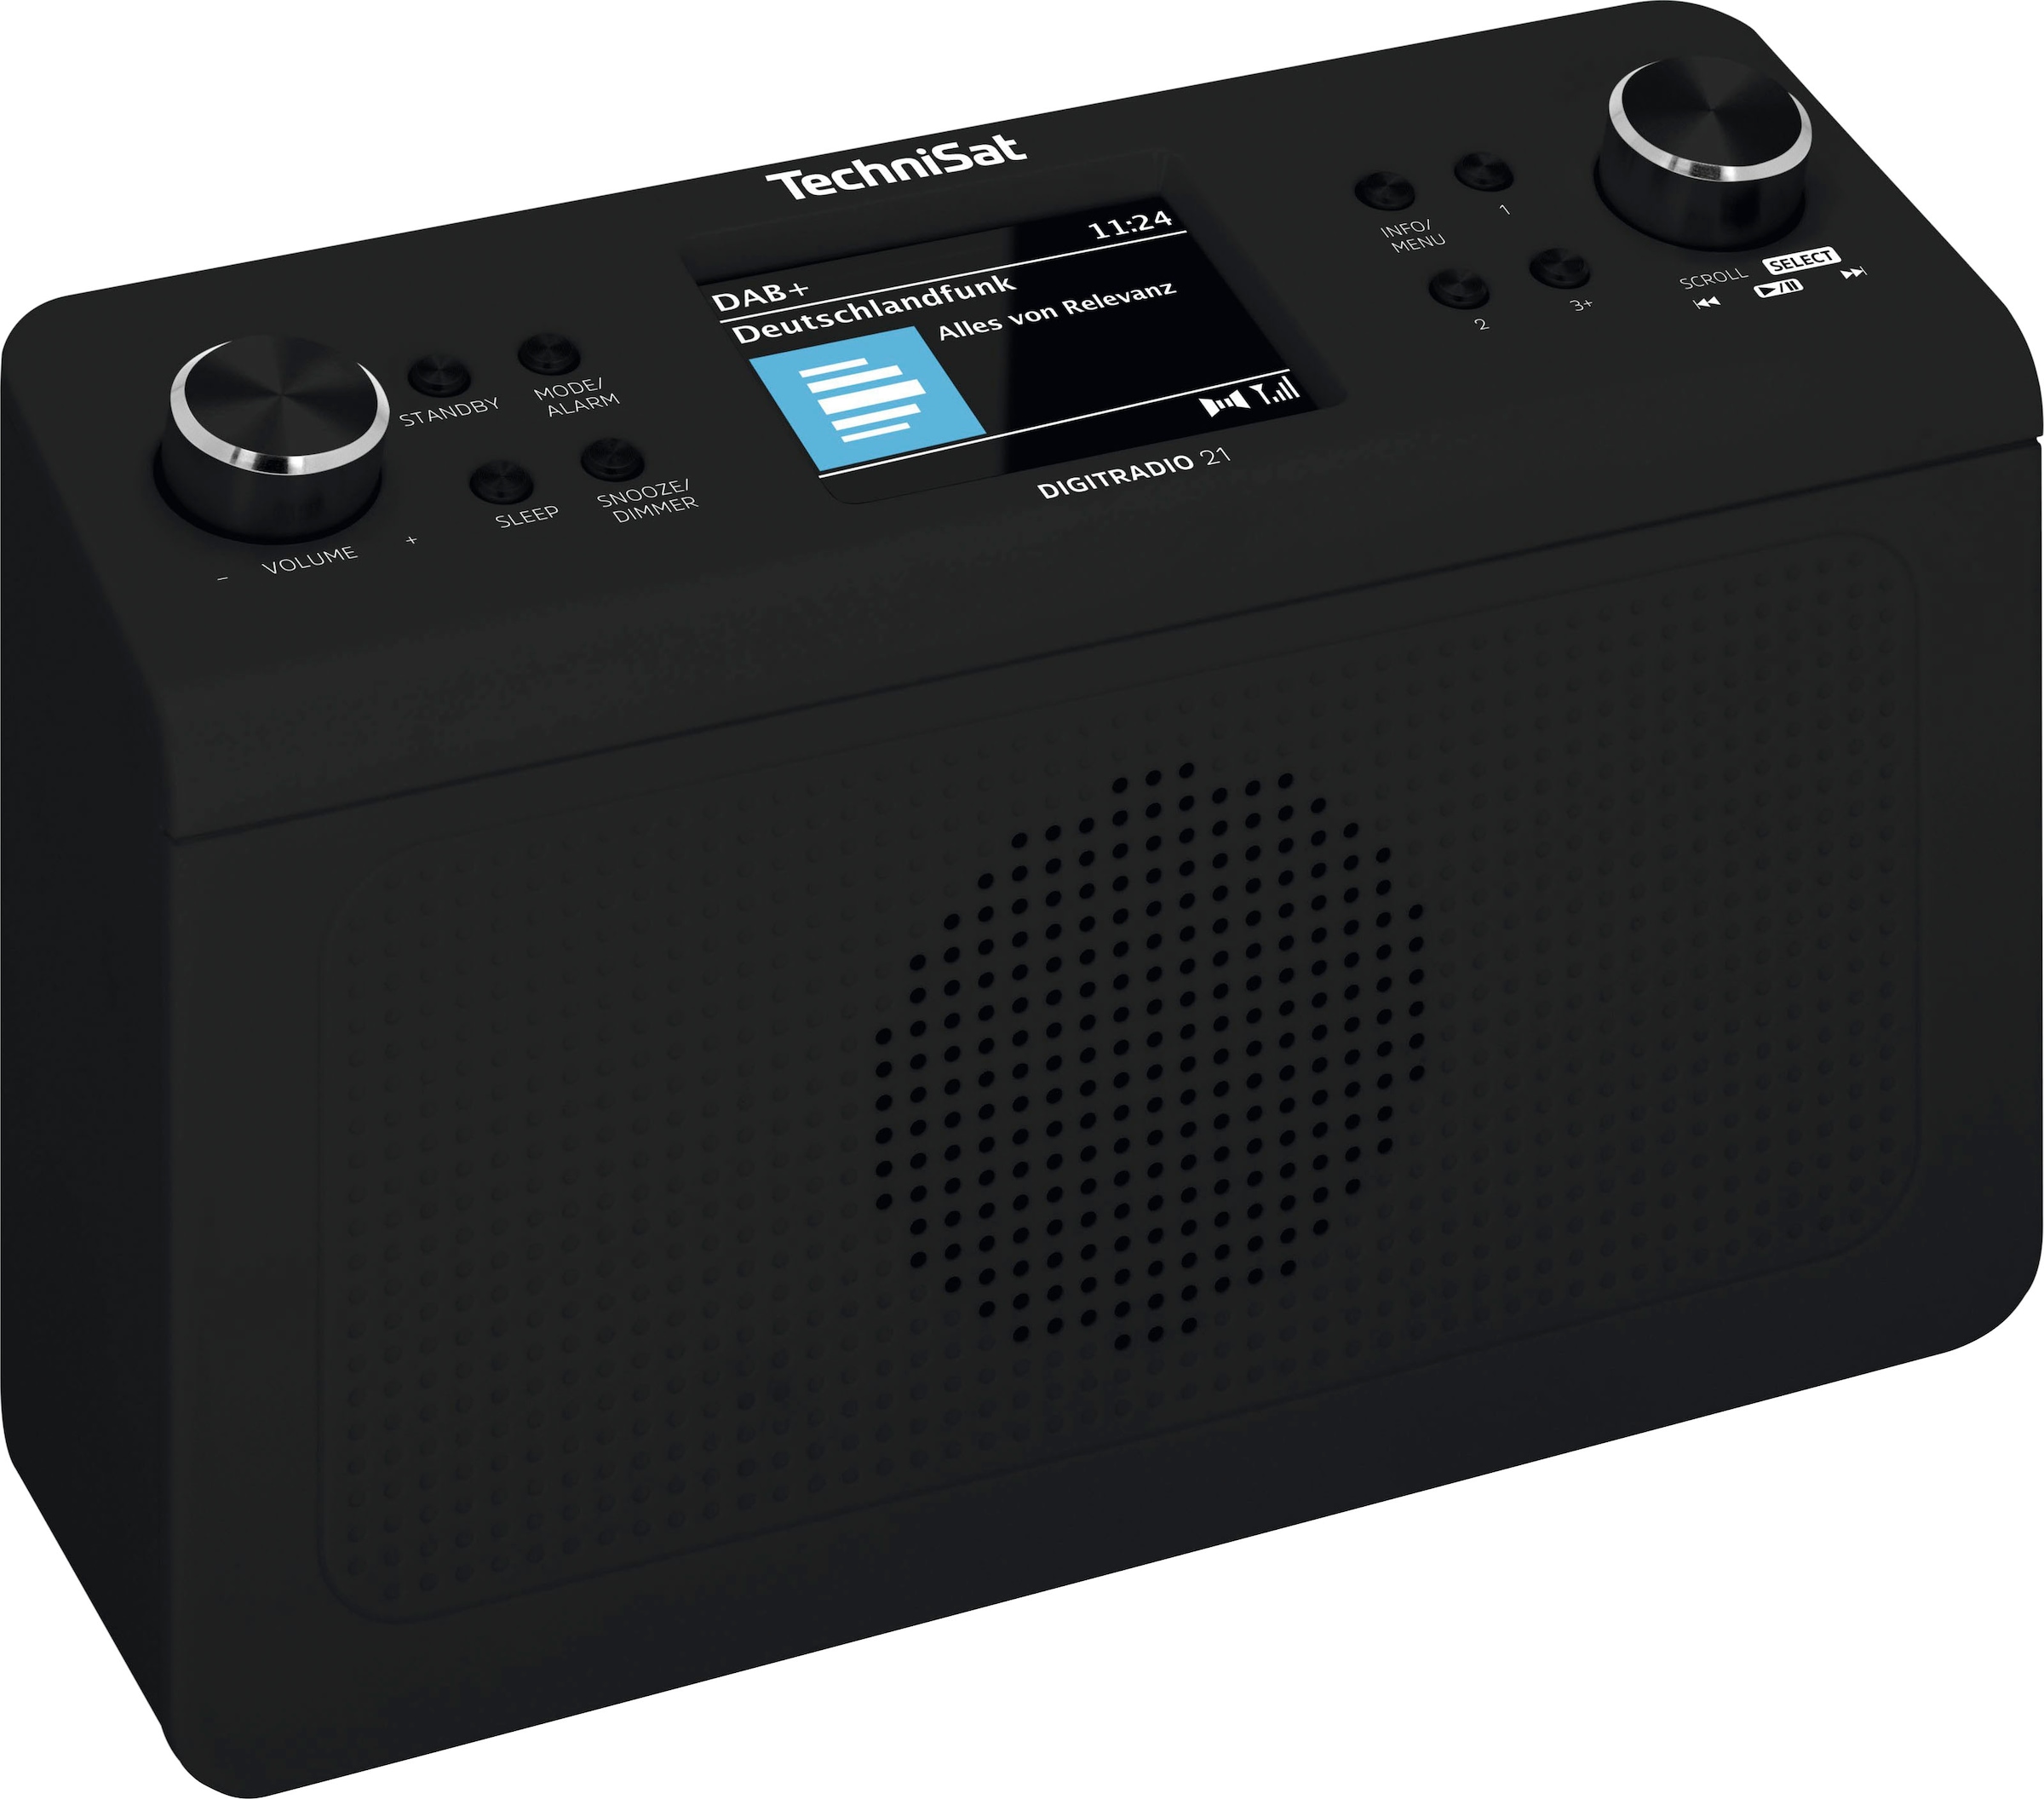 TechniSat Küchen-Radio »DIGITRADIO 21«, (A2DP Bluetooth-AVRCP Bluetooth  Digitalradio (DAB+)-UKW mit RDS 2 W), Unterbau-Radio,Küchen-Radio auf  Rechnung bestellen